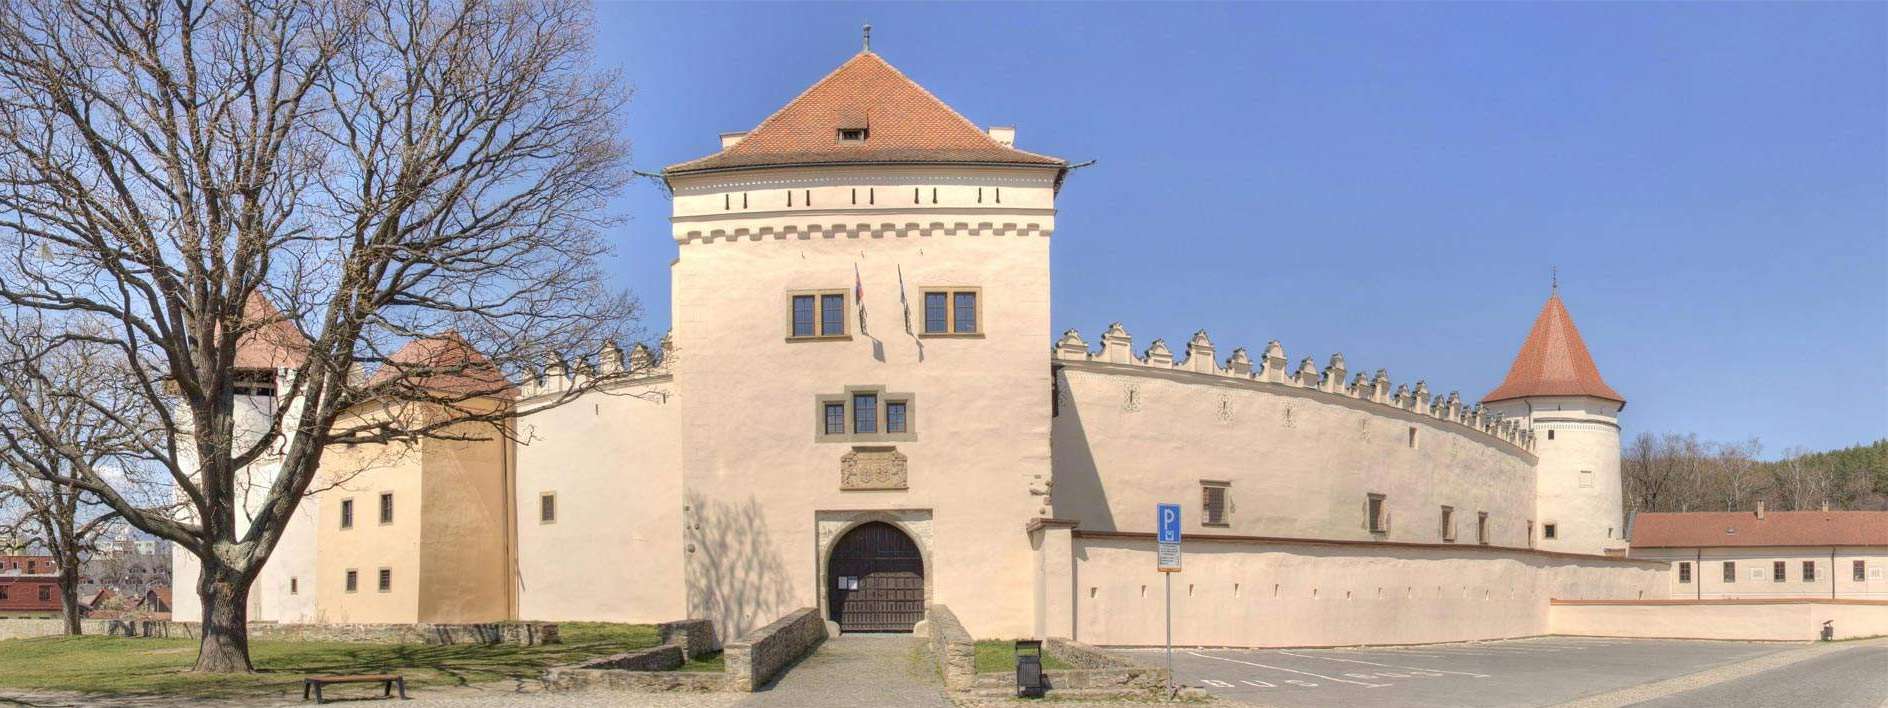 Kežmarský hrad - Kežmarok - Slovensko